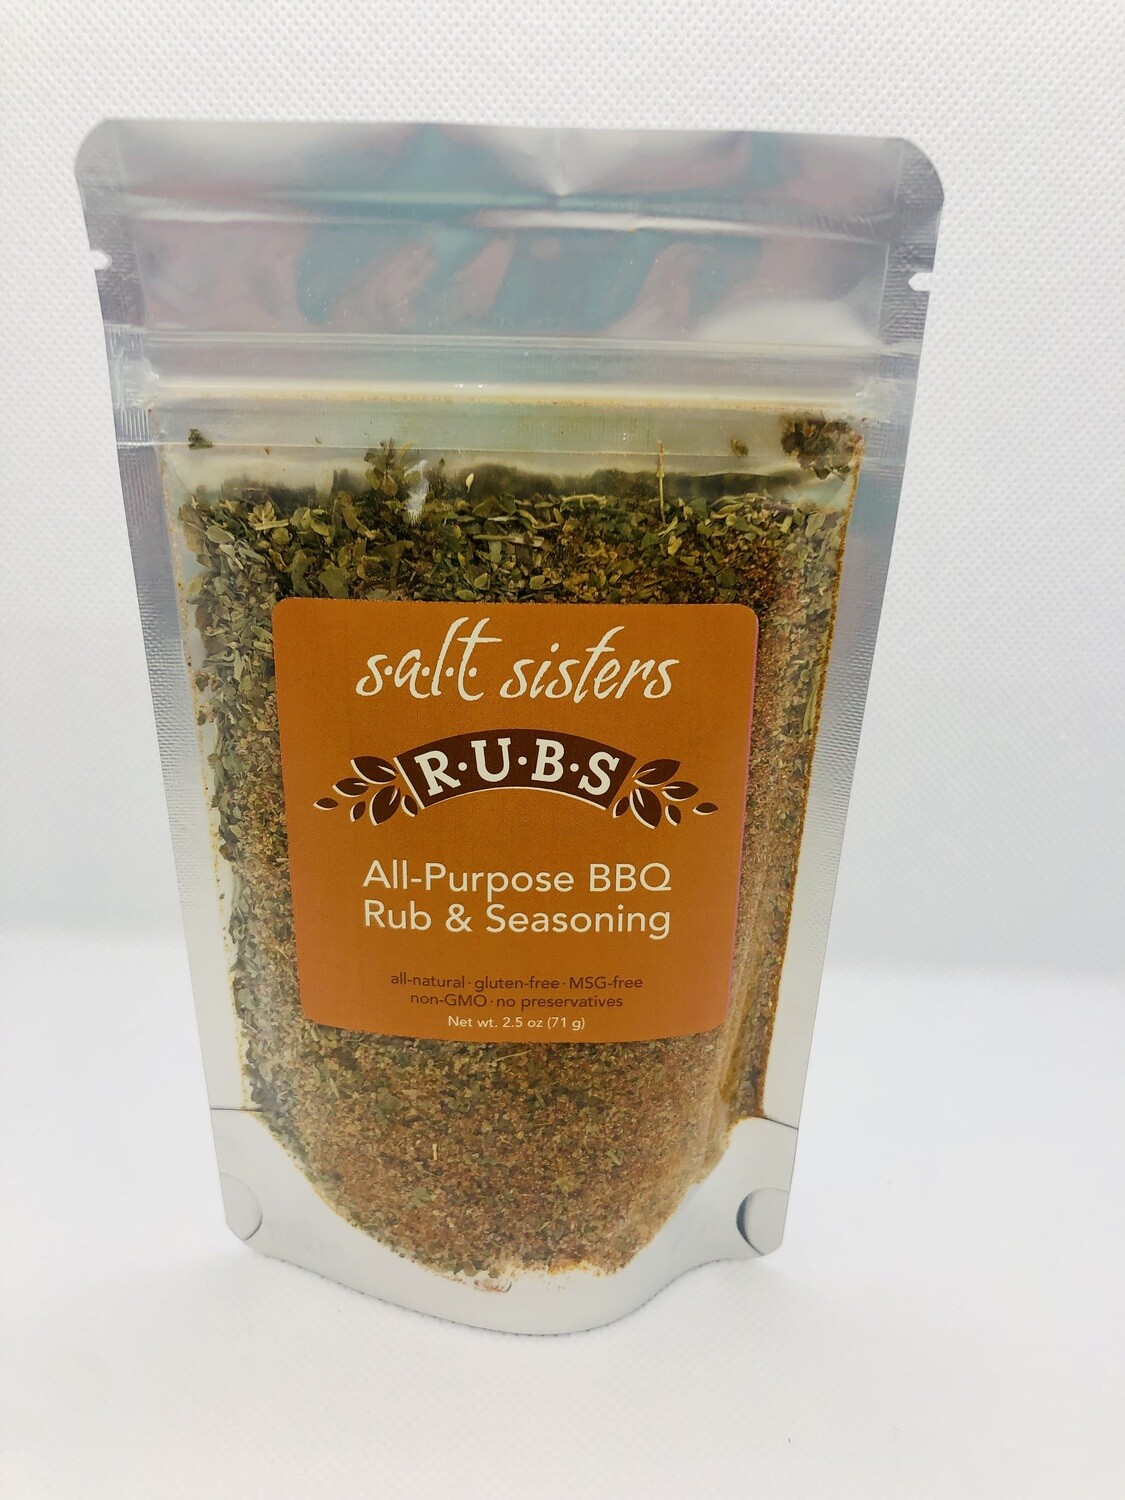 All-Purpose BBQ Rub & Seasoning